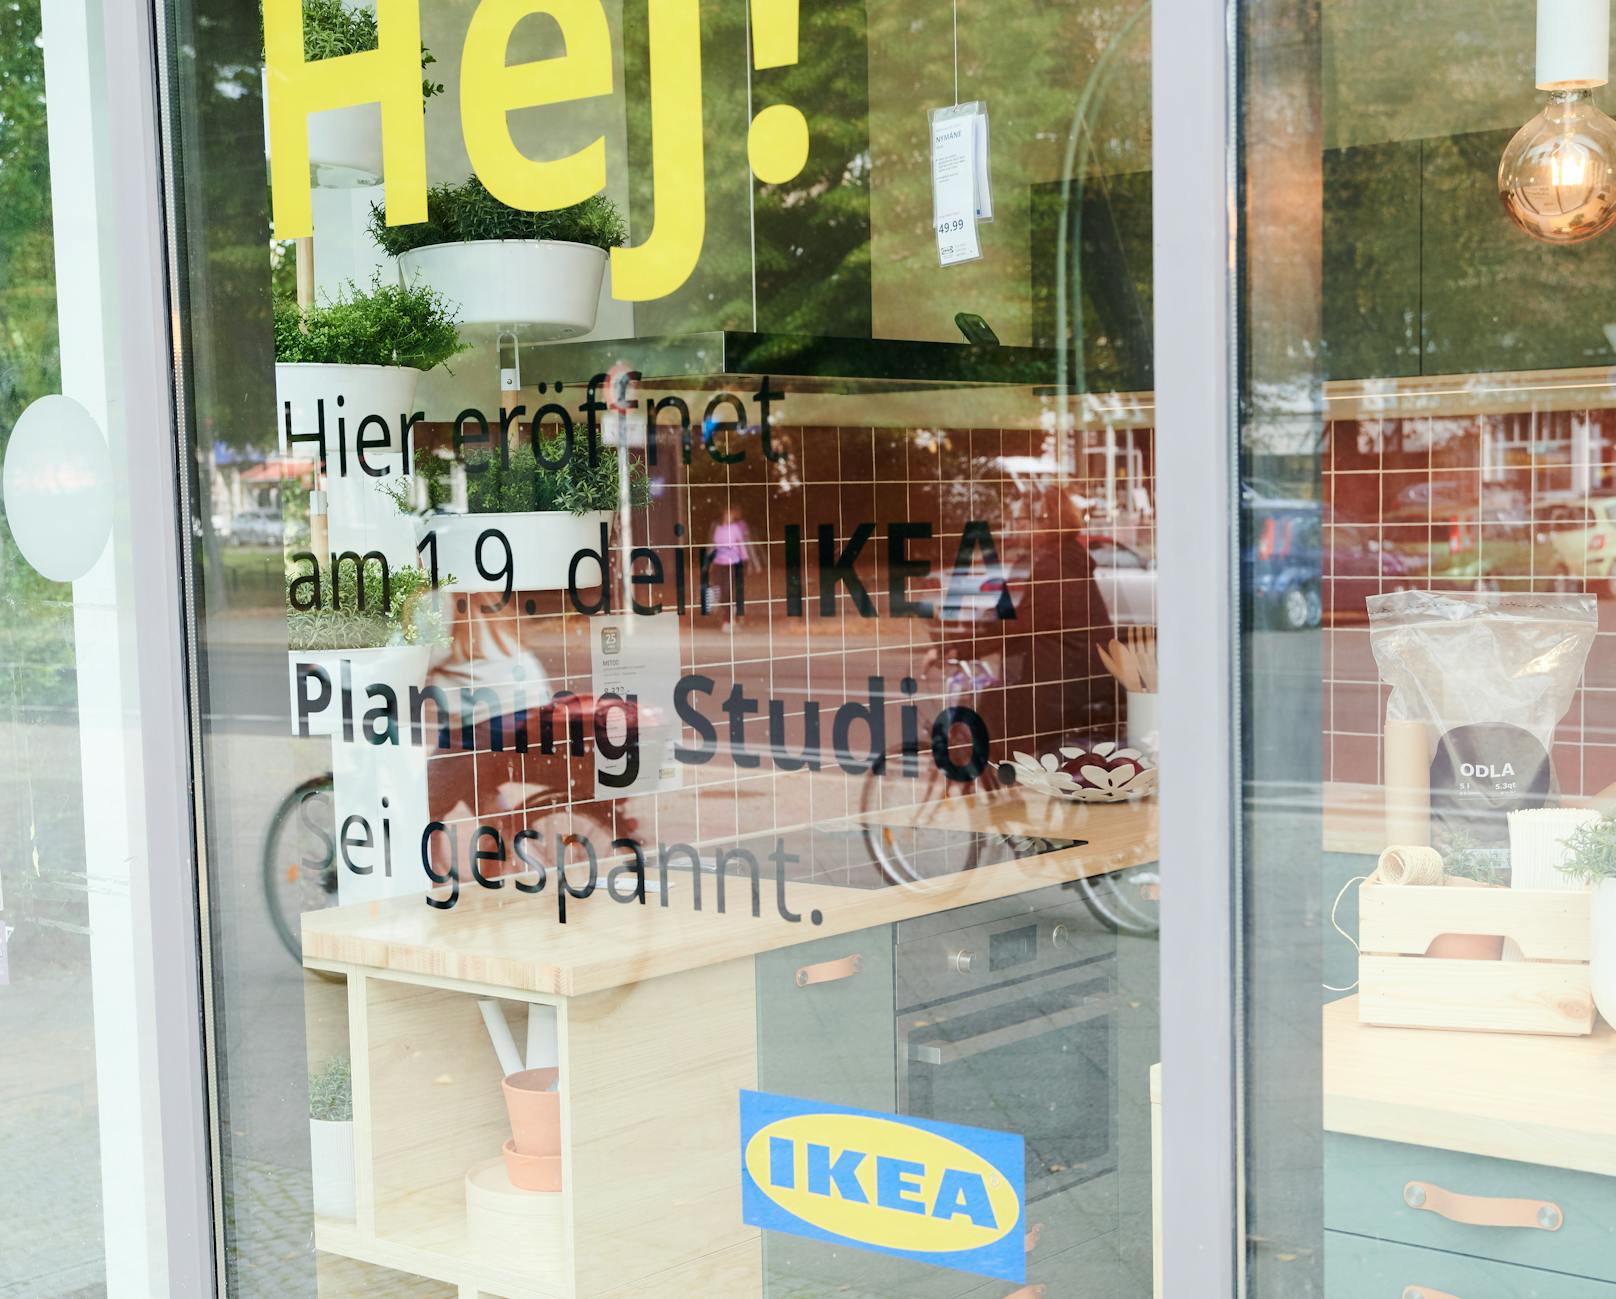 Neue Mini-Filiale von Ikea: das erste "Planungsstudio" des schwedischen Möbelriesen eröffnet am 1. September 2020 in Berlin.